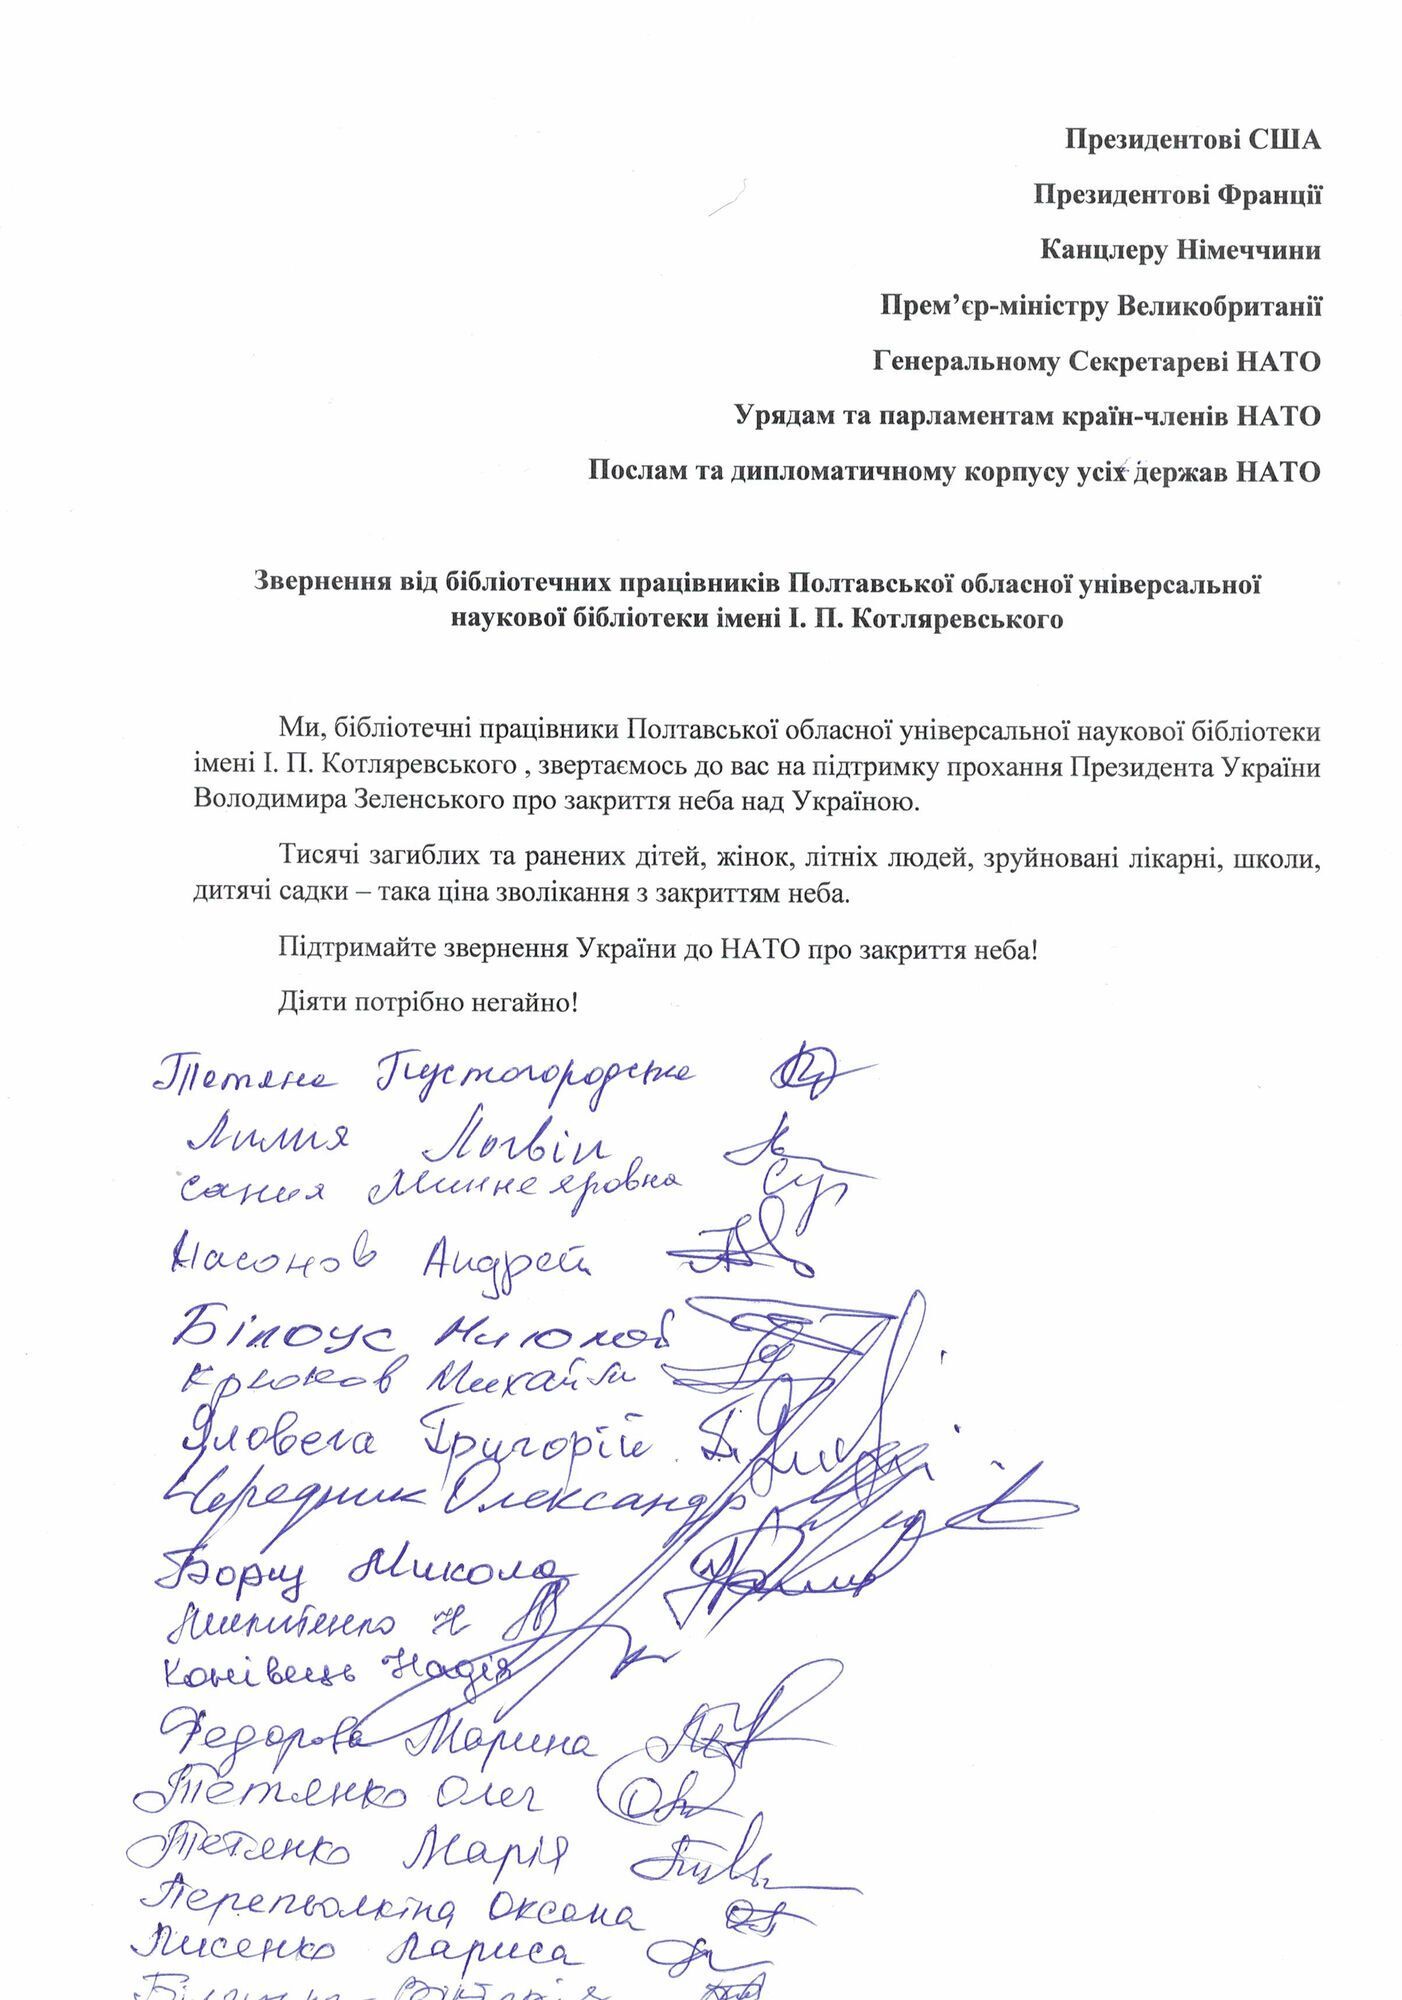 В Полтавской области более 200 тысяч жителей подписали обращение в НАТО о закрытии неба над Украиной